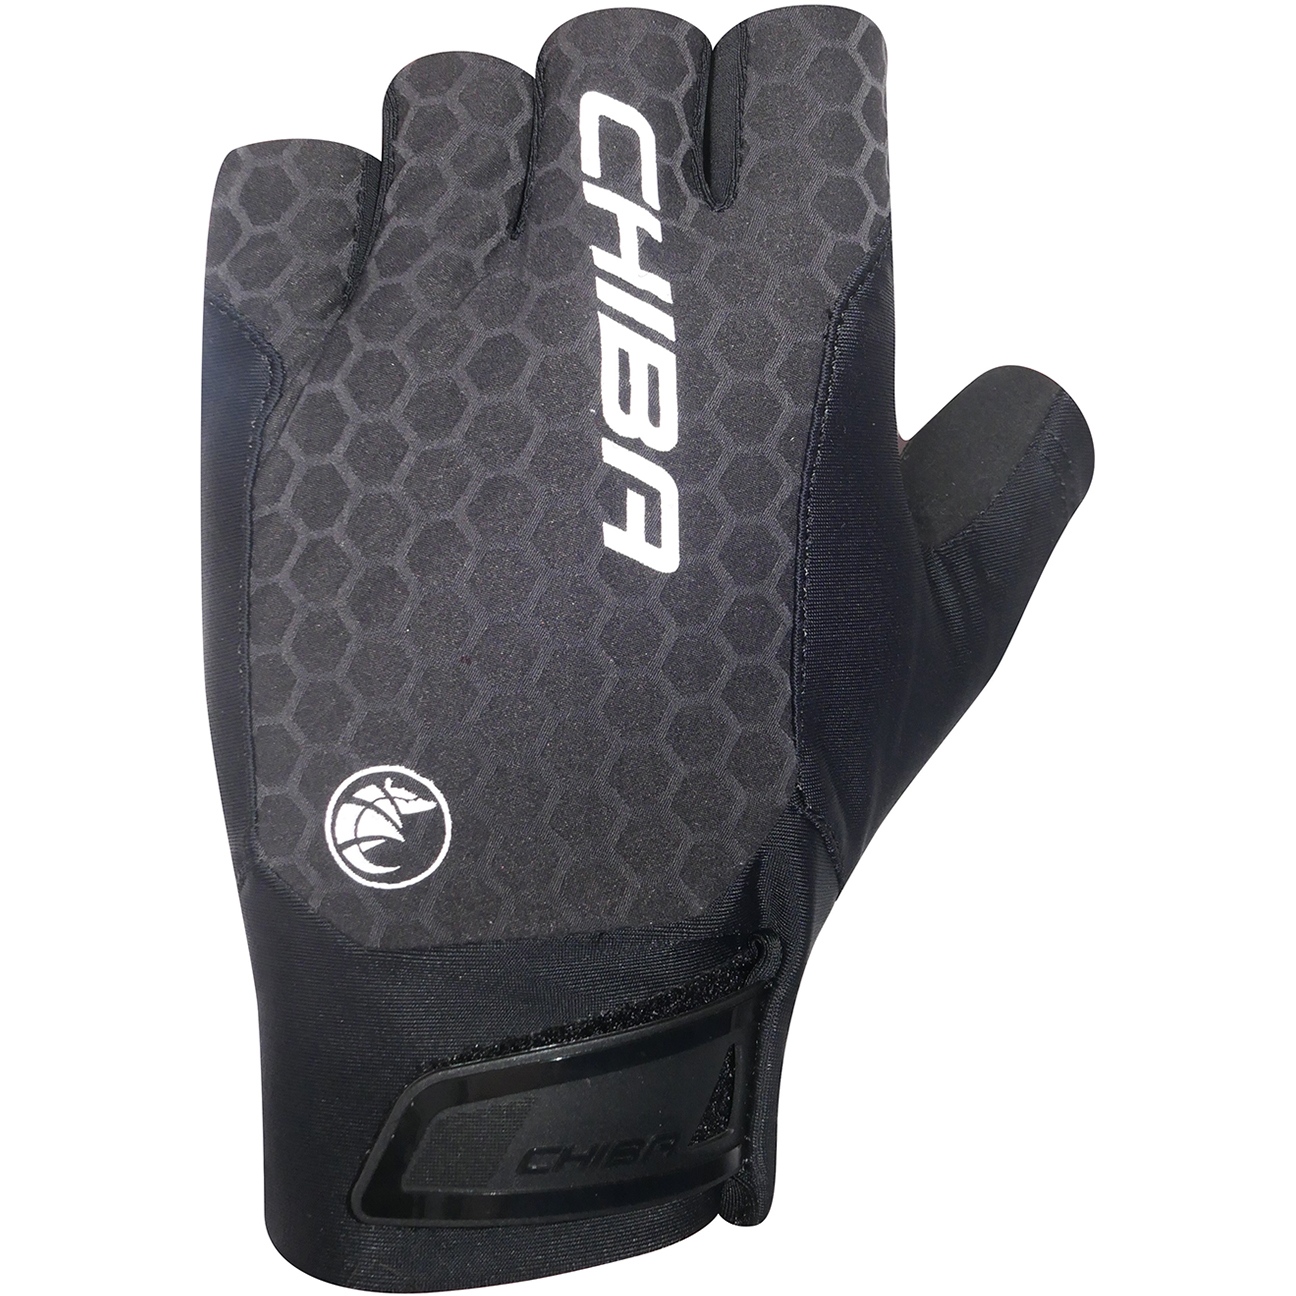 Produktbild von Chiba Pure Race II Kurzfinger-Handschuhe - schwarz